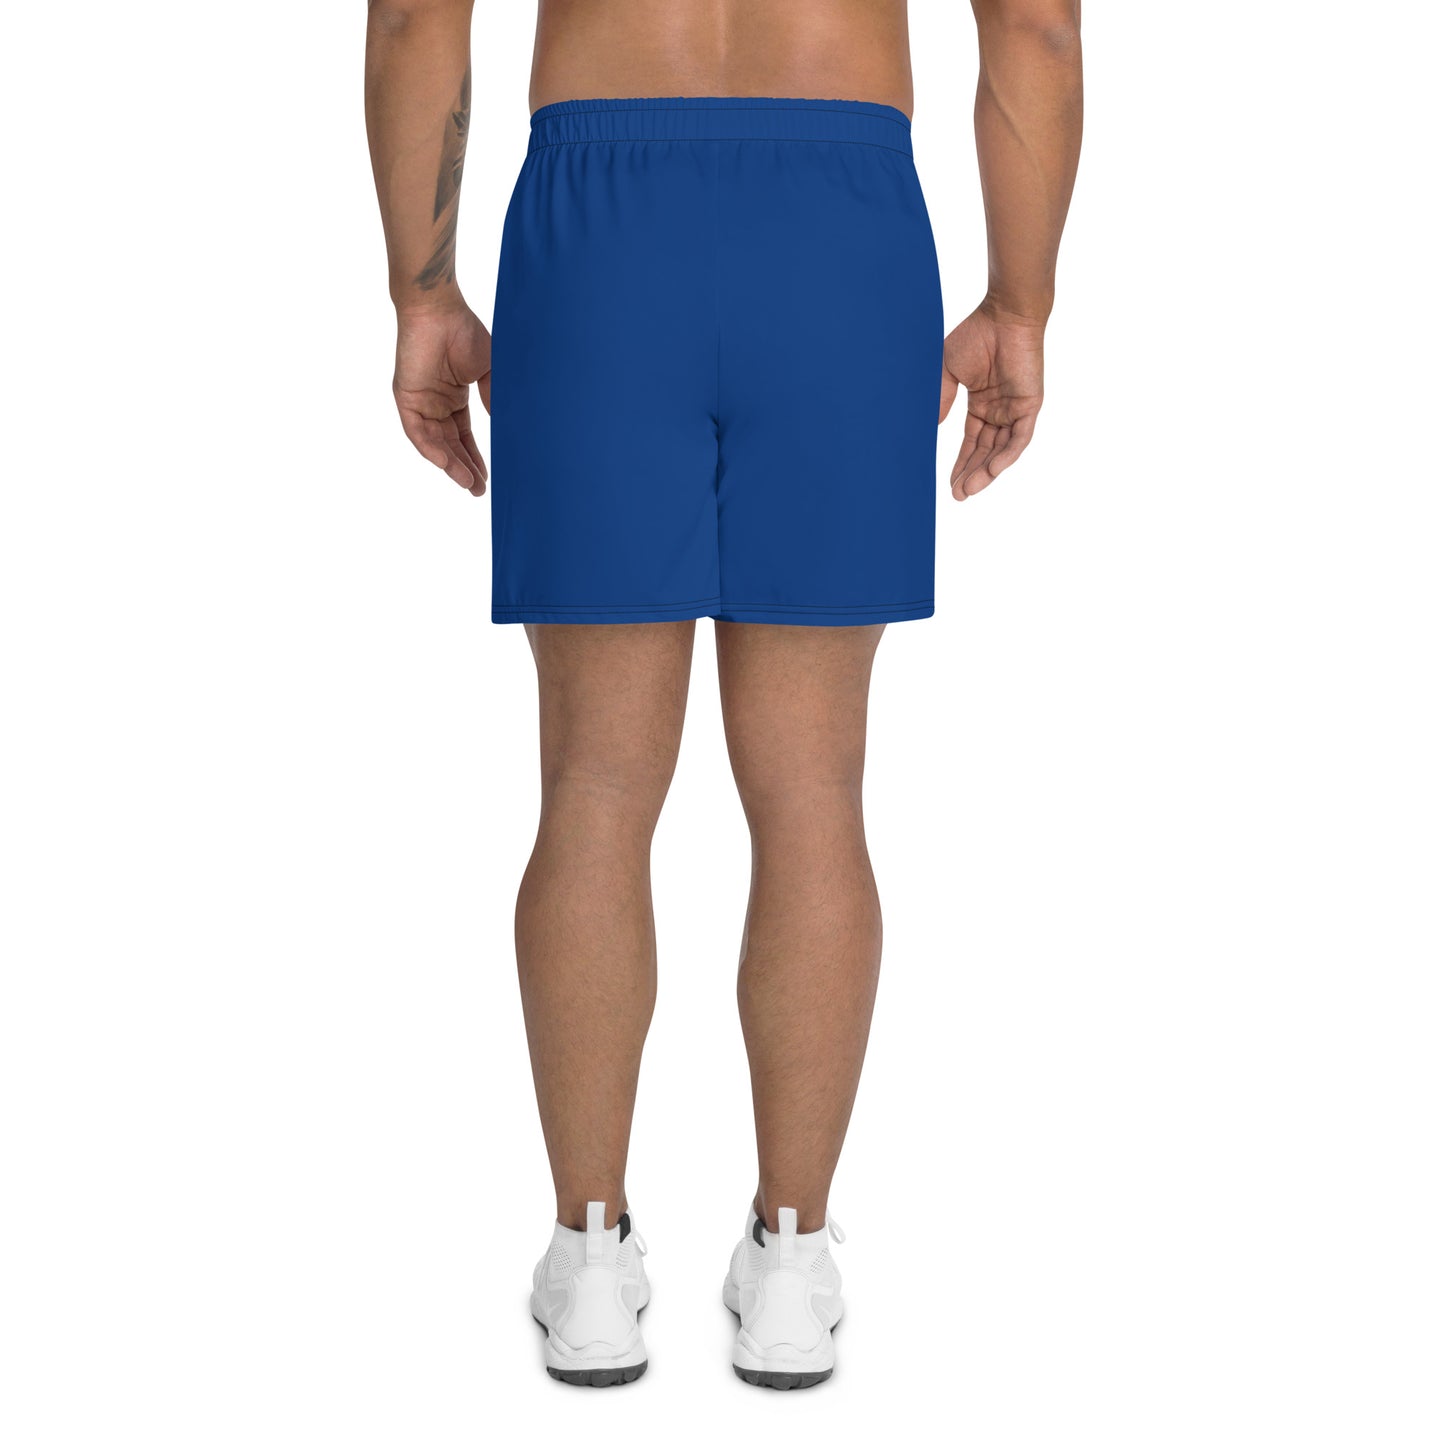 SISU - Men's Recycled Athletic Shorts- Royal Blue